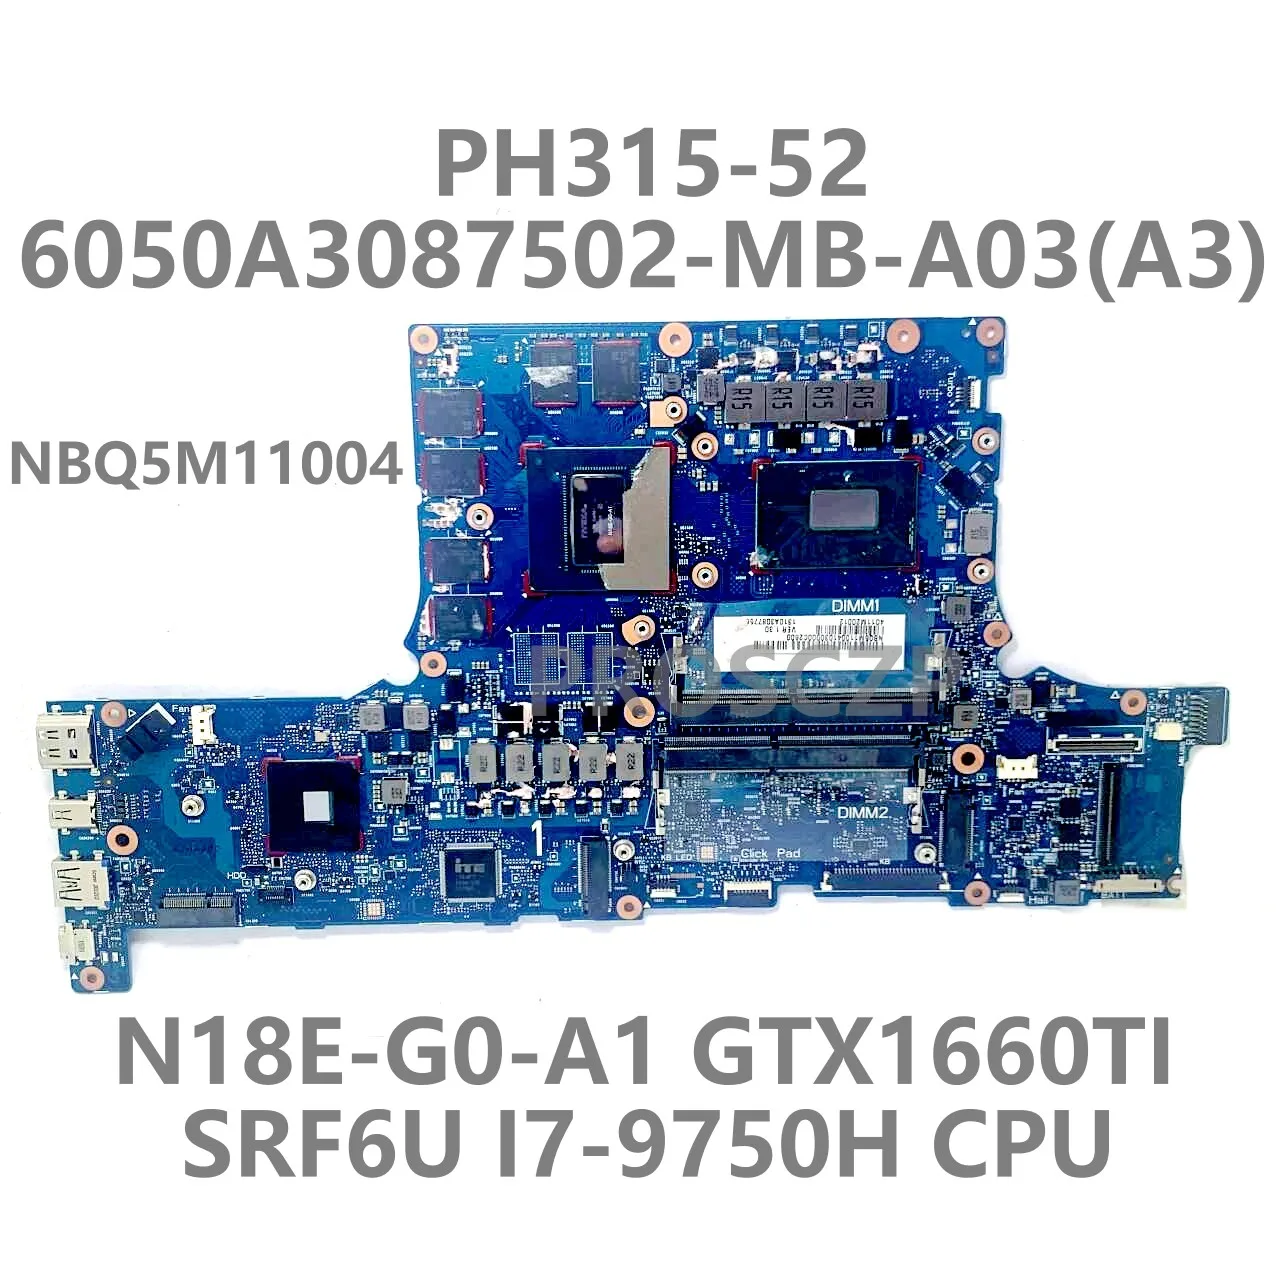 Для ноутбука Acer PH315-52 Материнская плата 6050A3087502-MB-A03 (A3) NBQ5M1104 SRF6U I7-9750H Процессор N18E-G0-A1 GTX1660Ti 100% Протестирован Хорошо0